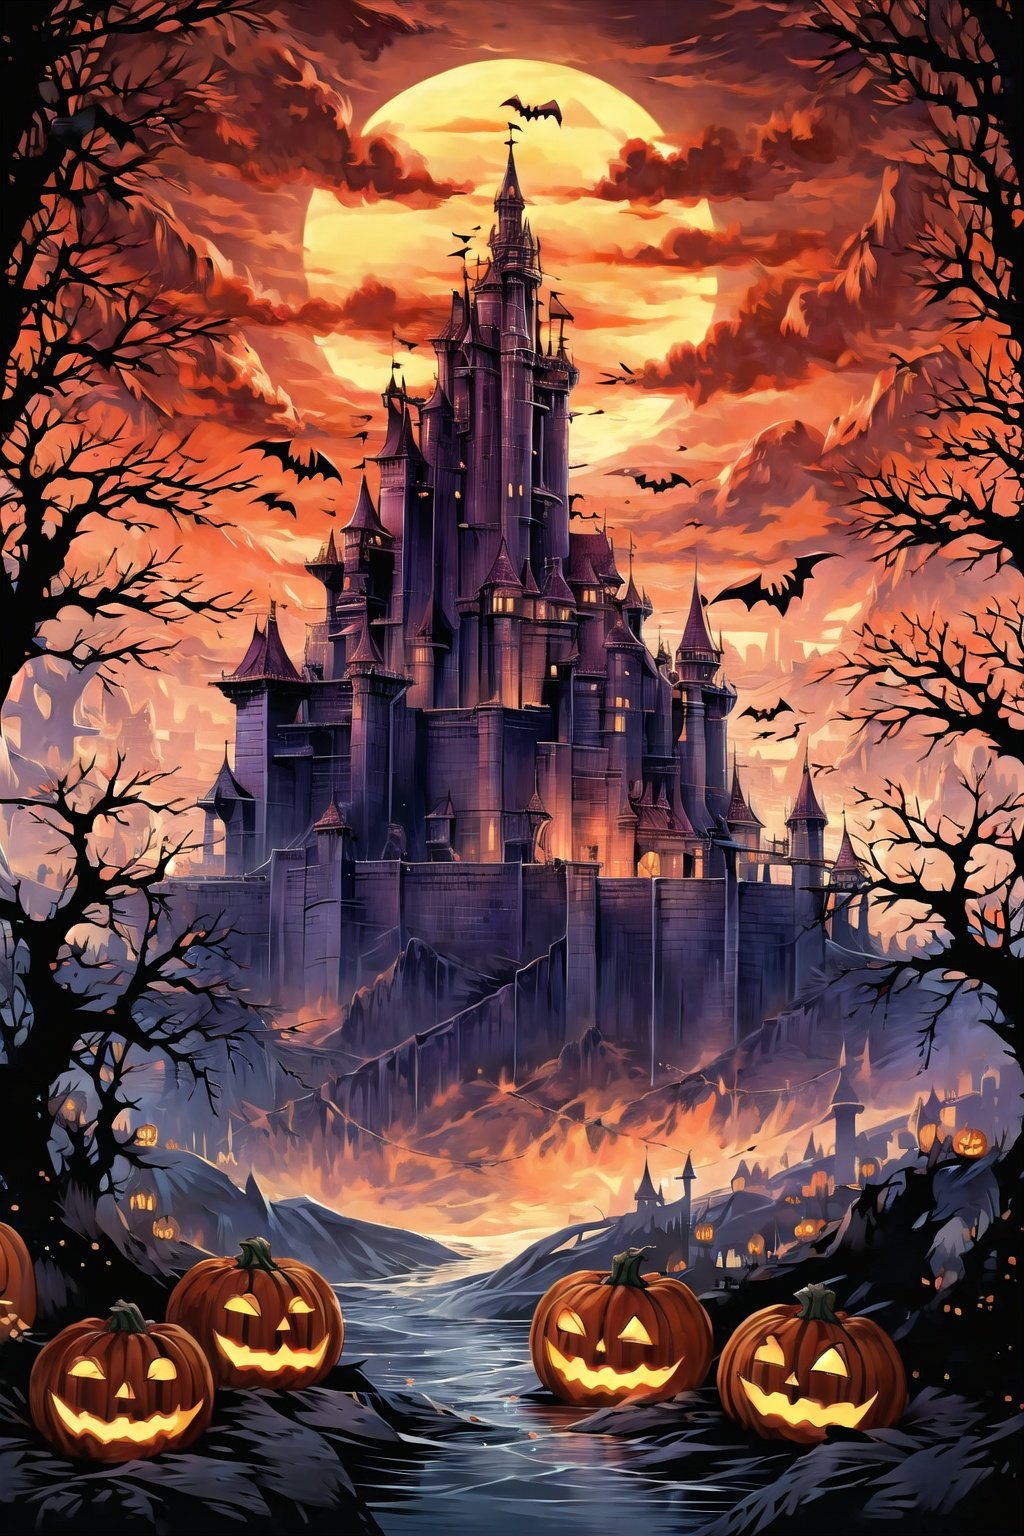  evening,candle,embers,halloween,pumpkin,bat,castle,Pumpkin lanterns hanging from trees